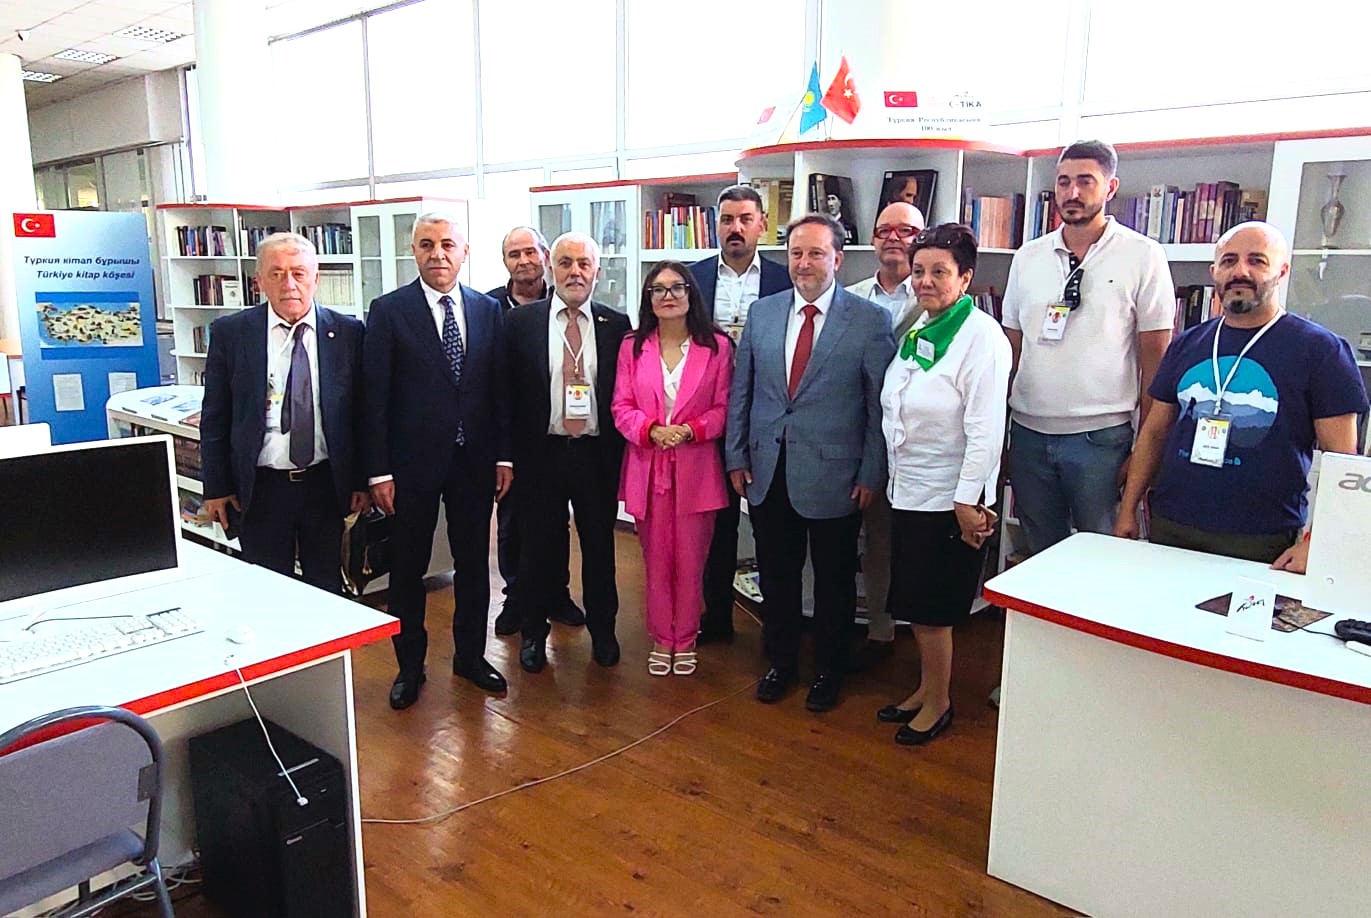 Türk işbirliği ve Koordinasyon Ajansı Başkanlığı (TİKA) ve T.C. Almatı Başkonsolosluğunun dikkatine